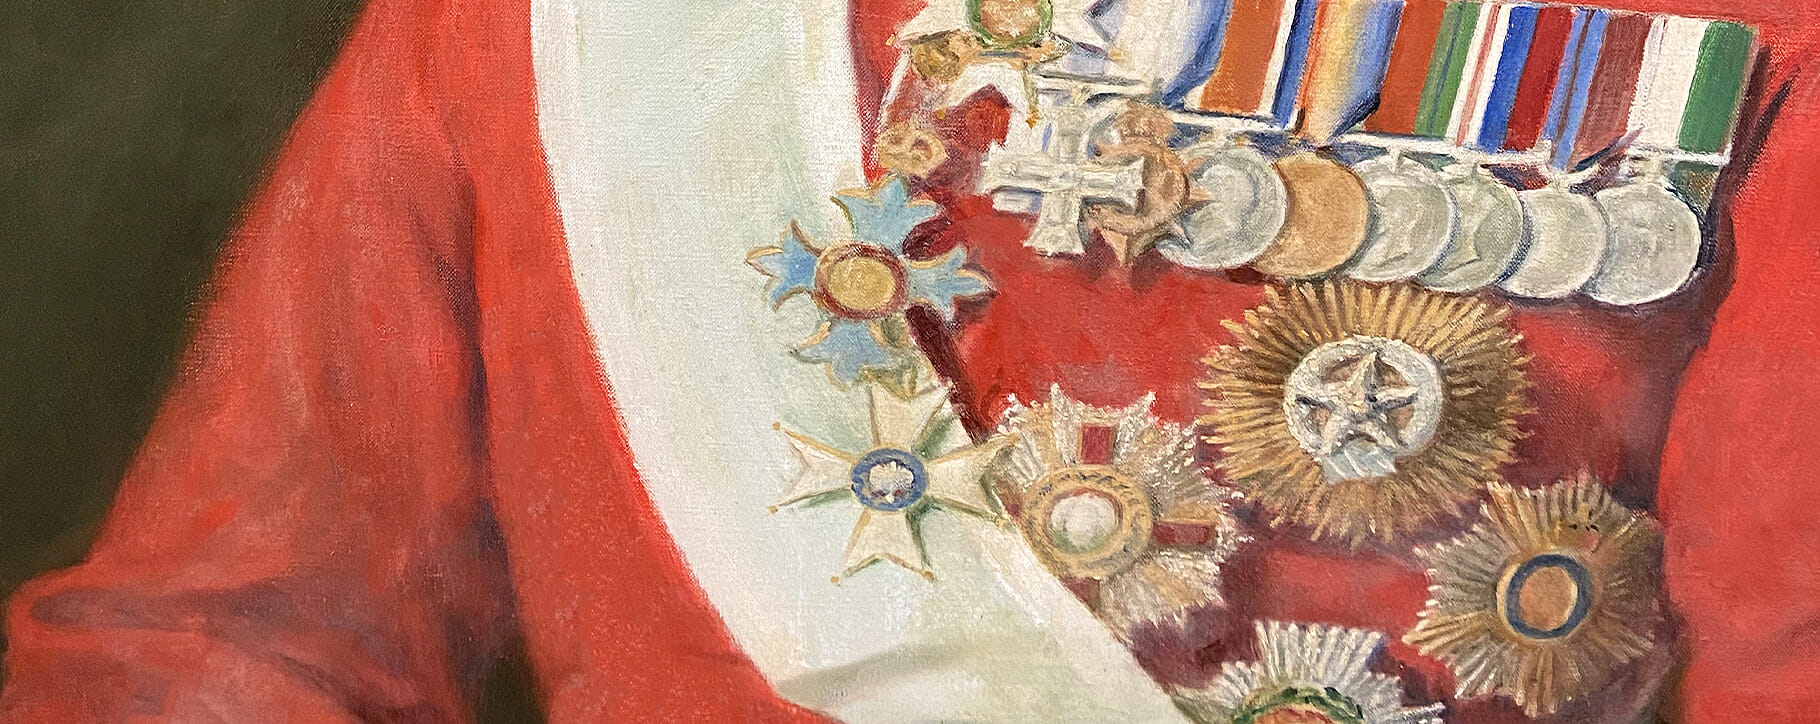 medals preservation detail